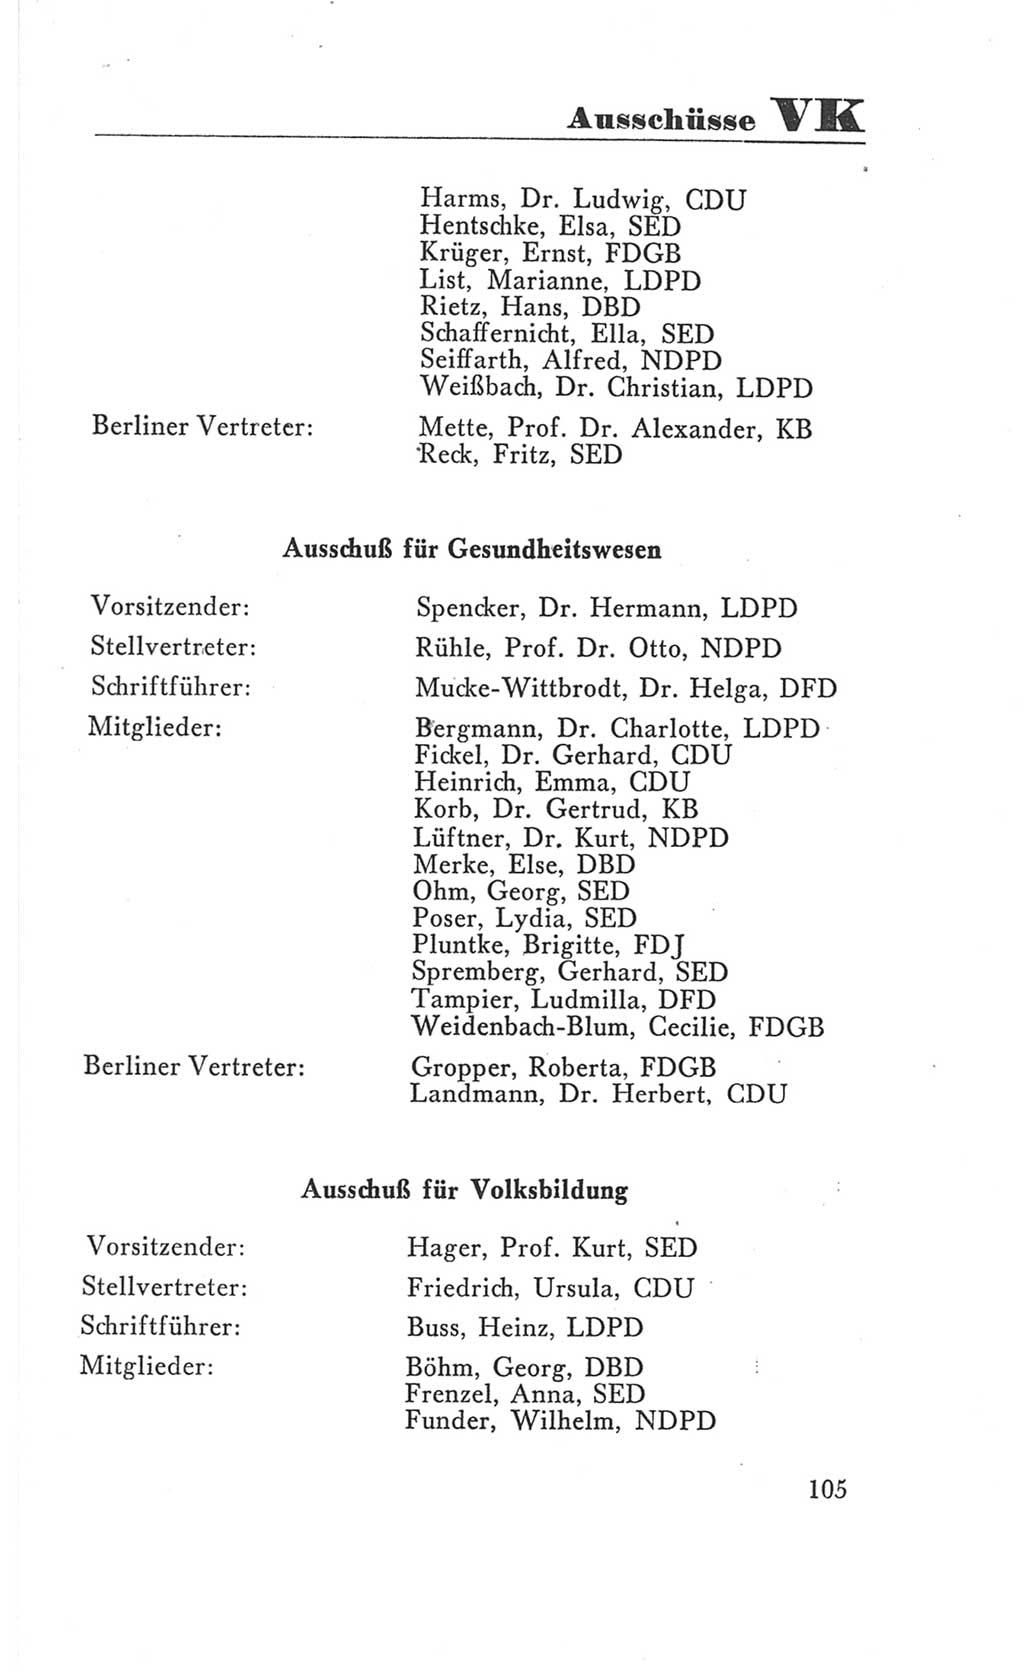 Handbuch der Volkskammer (VK) der Deutschen Demokratischen Republik (DDR), 3. Wahlperiode 1958-1963, Seite 105 (Hdb. VK. DDR 3. WP. 1958-1963, S. 105)